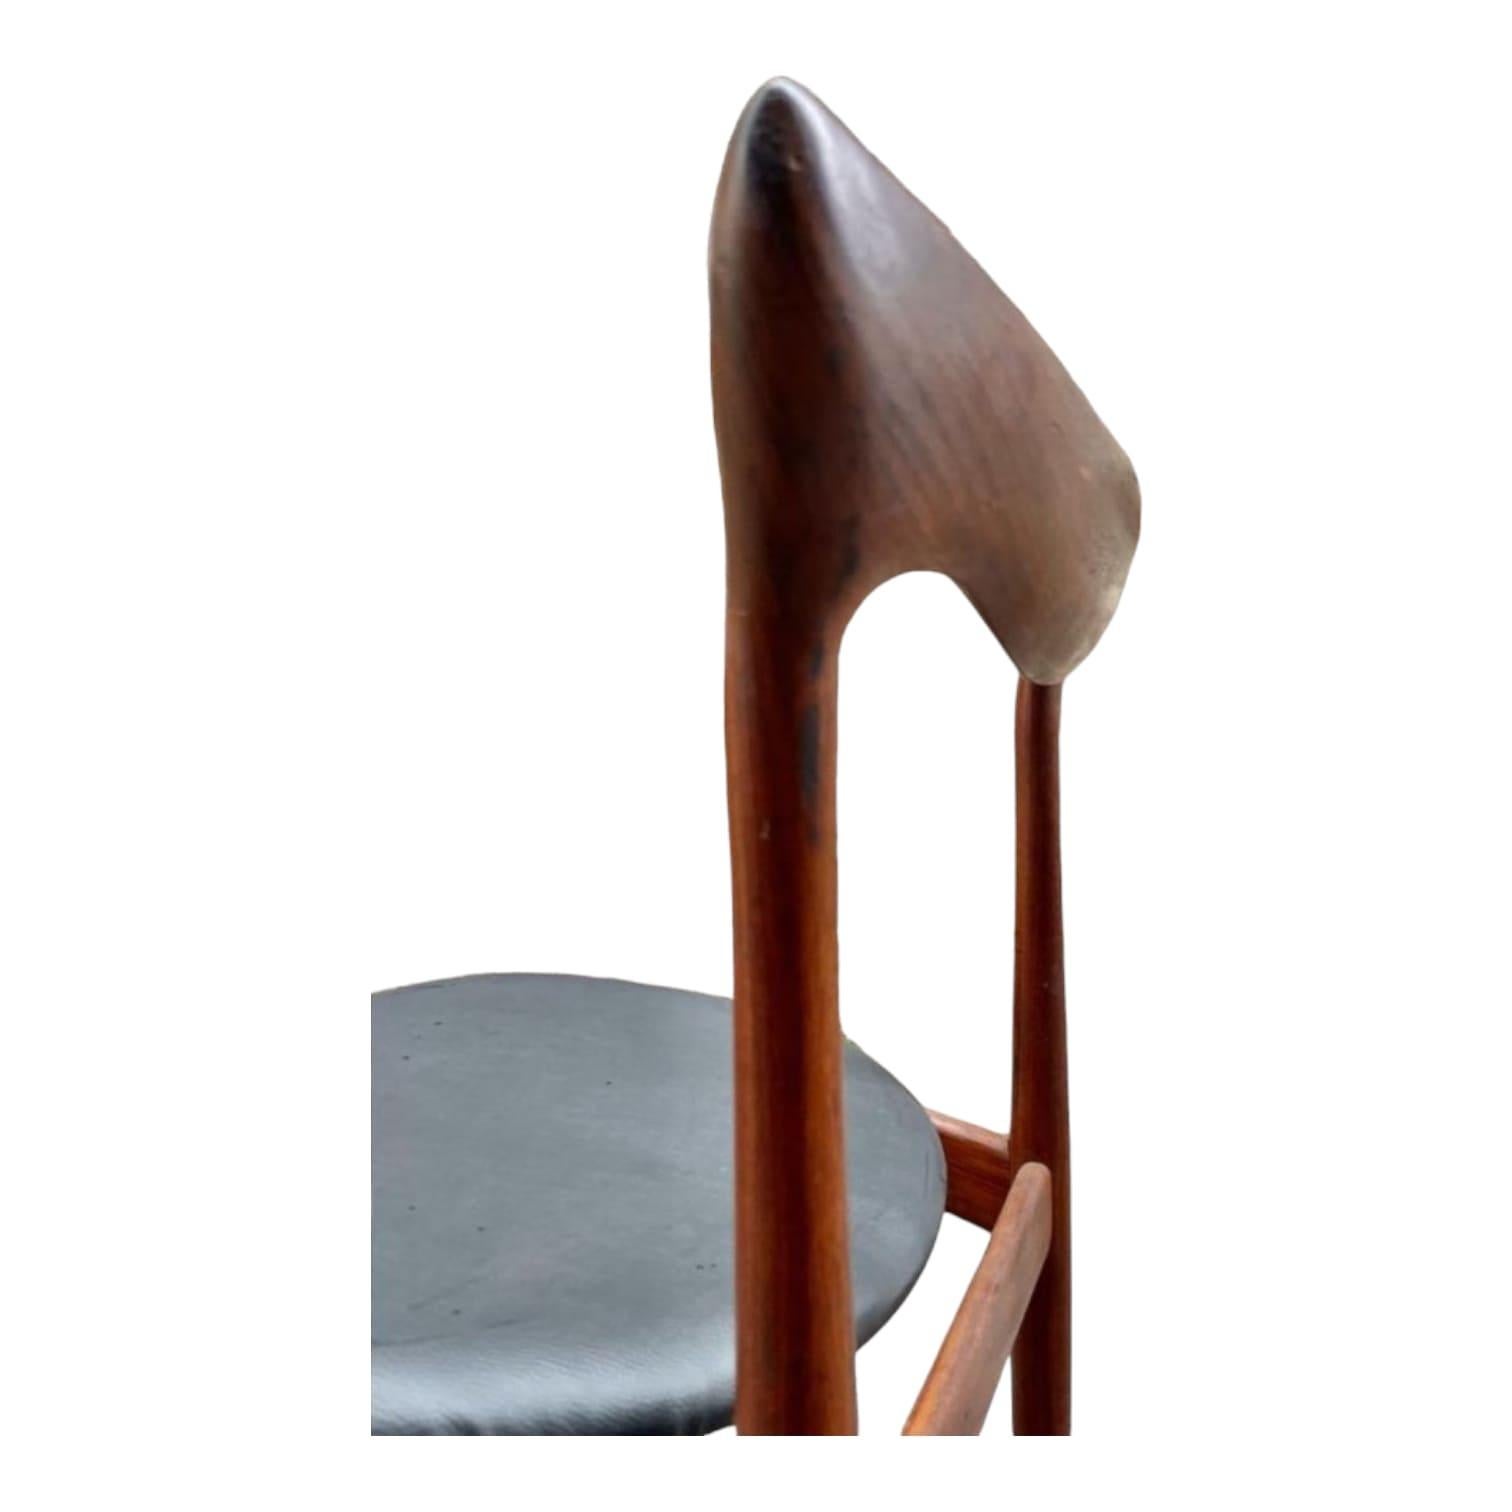 Nous avons le plaisir de vous présenter cette superbe série de 4 chaises d'Henri Walter Klein pour Bramin datant des années 1960. Ces étonnantes antiquités danoises sont conçues avec le souci du détail et un savoir-faire exceptionnel. Avec une